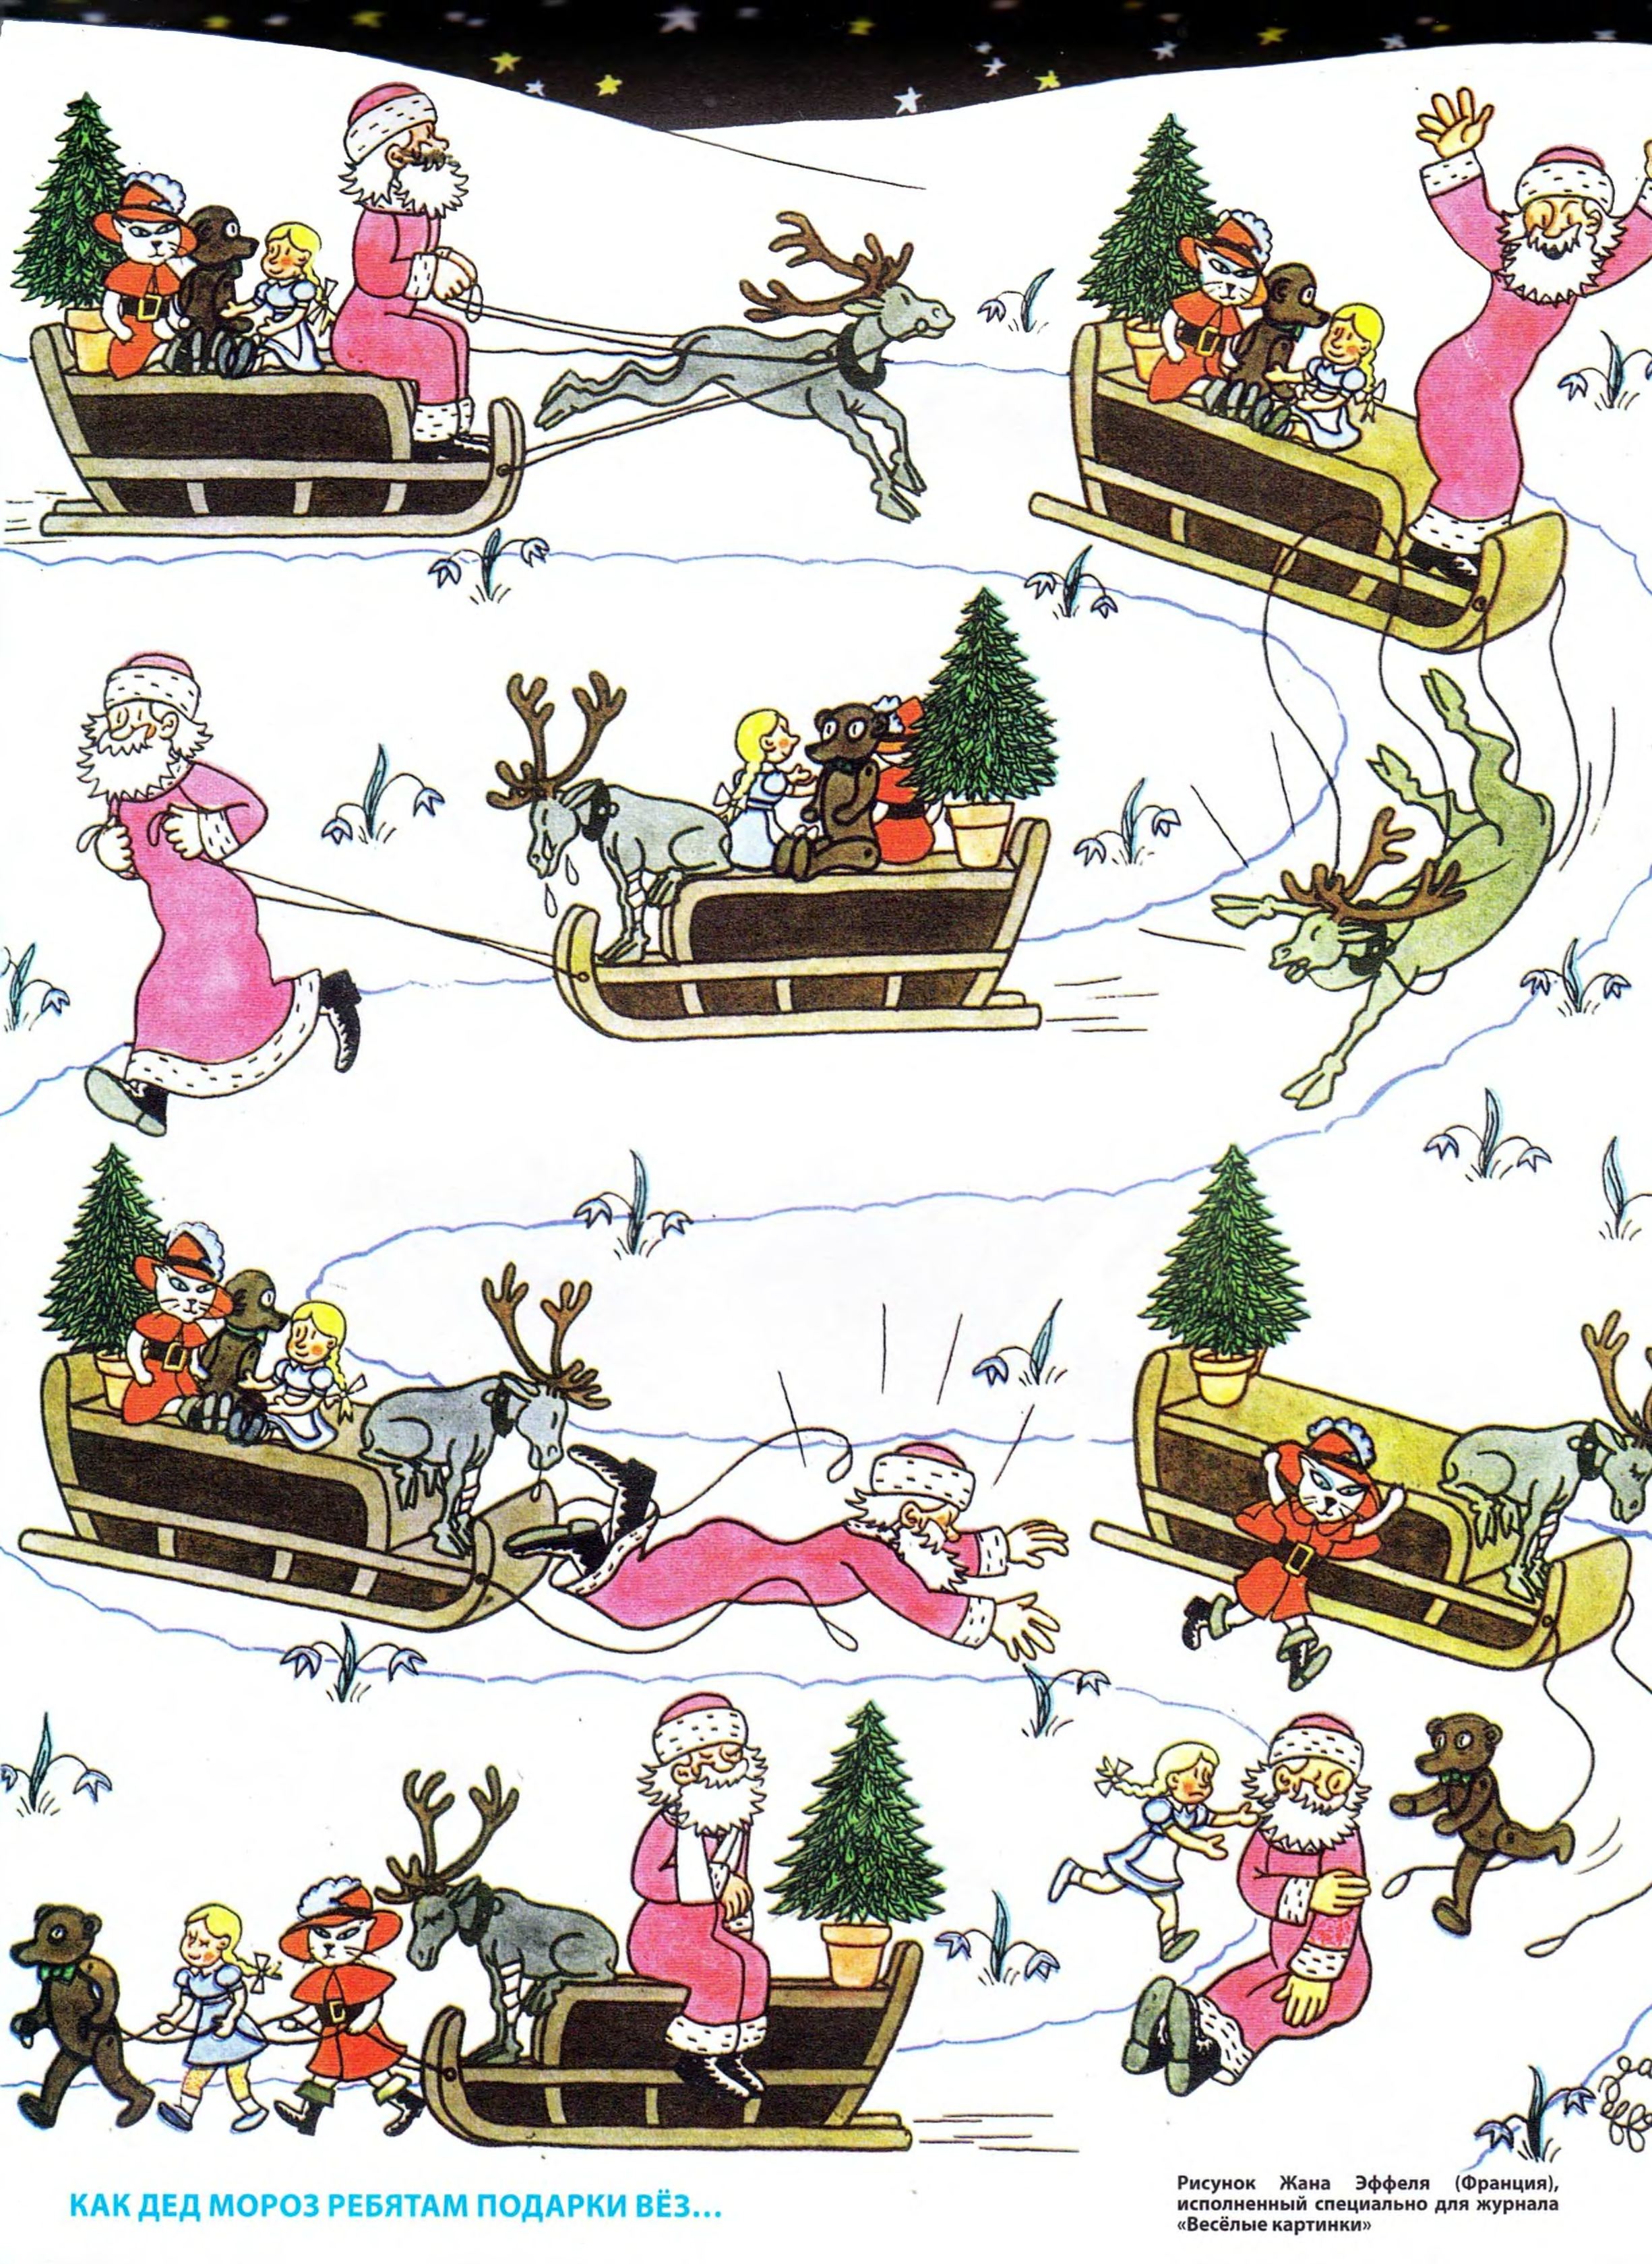 Эффель, Жан. Как Дед Мороз ребятам подарки вёз... Весёлые картинки 1957 №01, с. 6-7.jpg